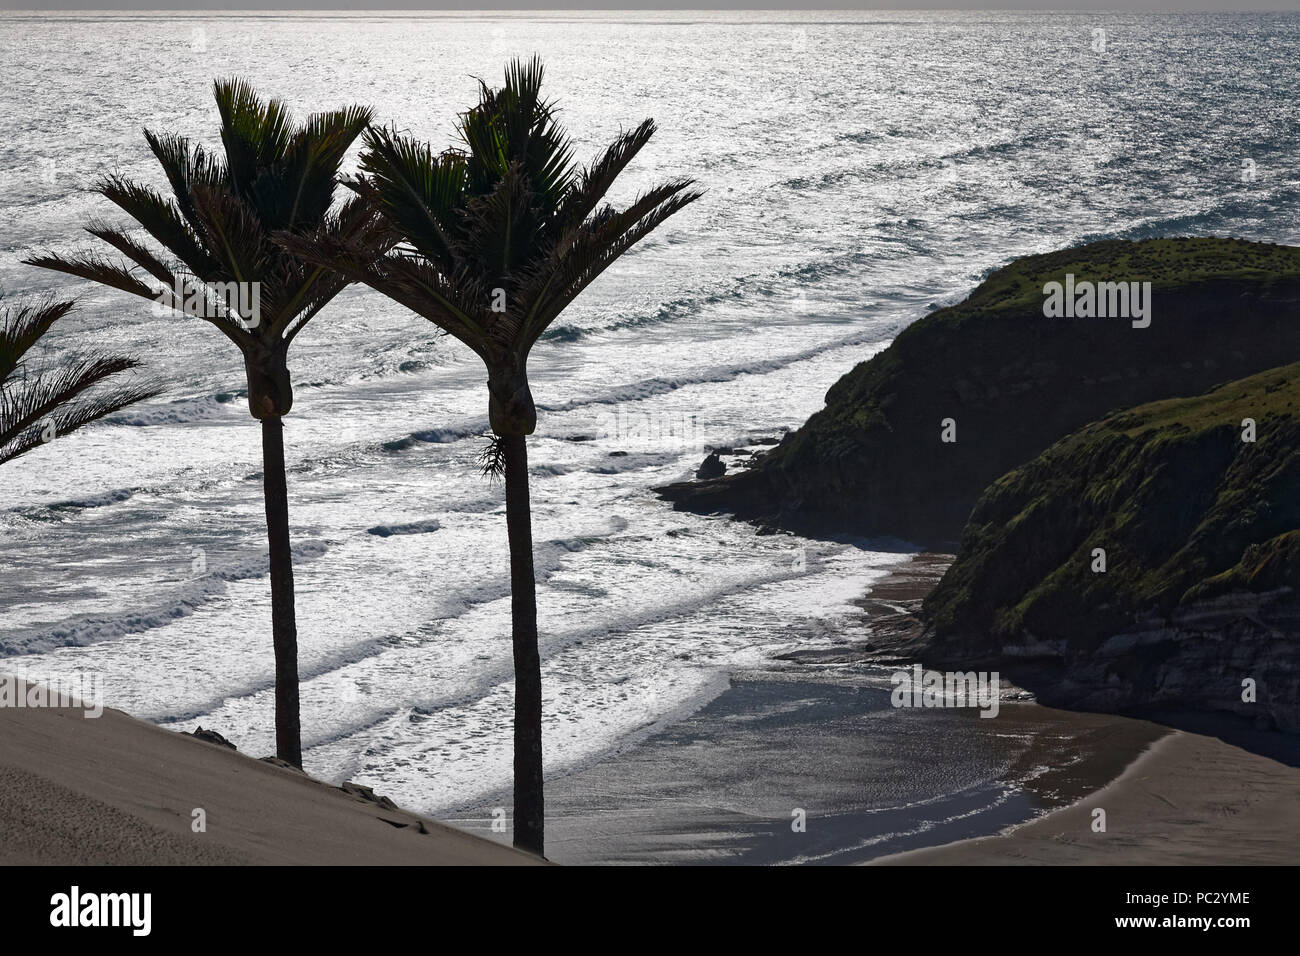 Nikau palmiers donnant sur l'océan sur la côte ouest de la Nouvelle-Zélande Banque D'Images